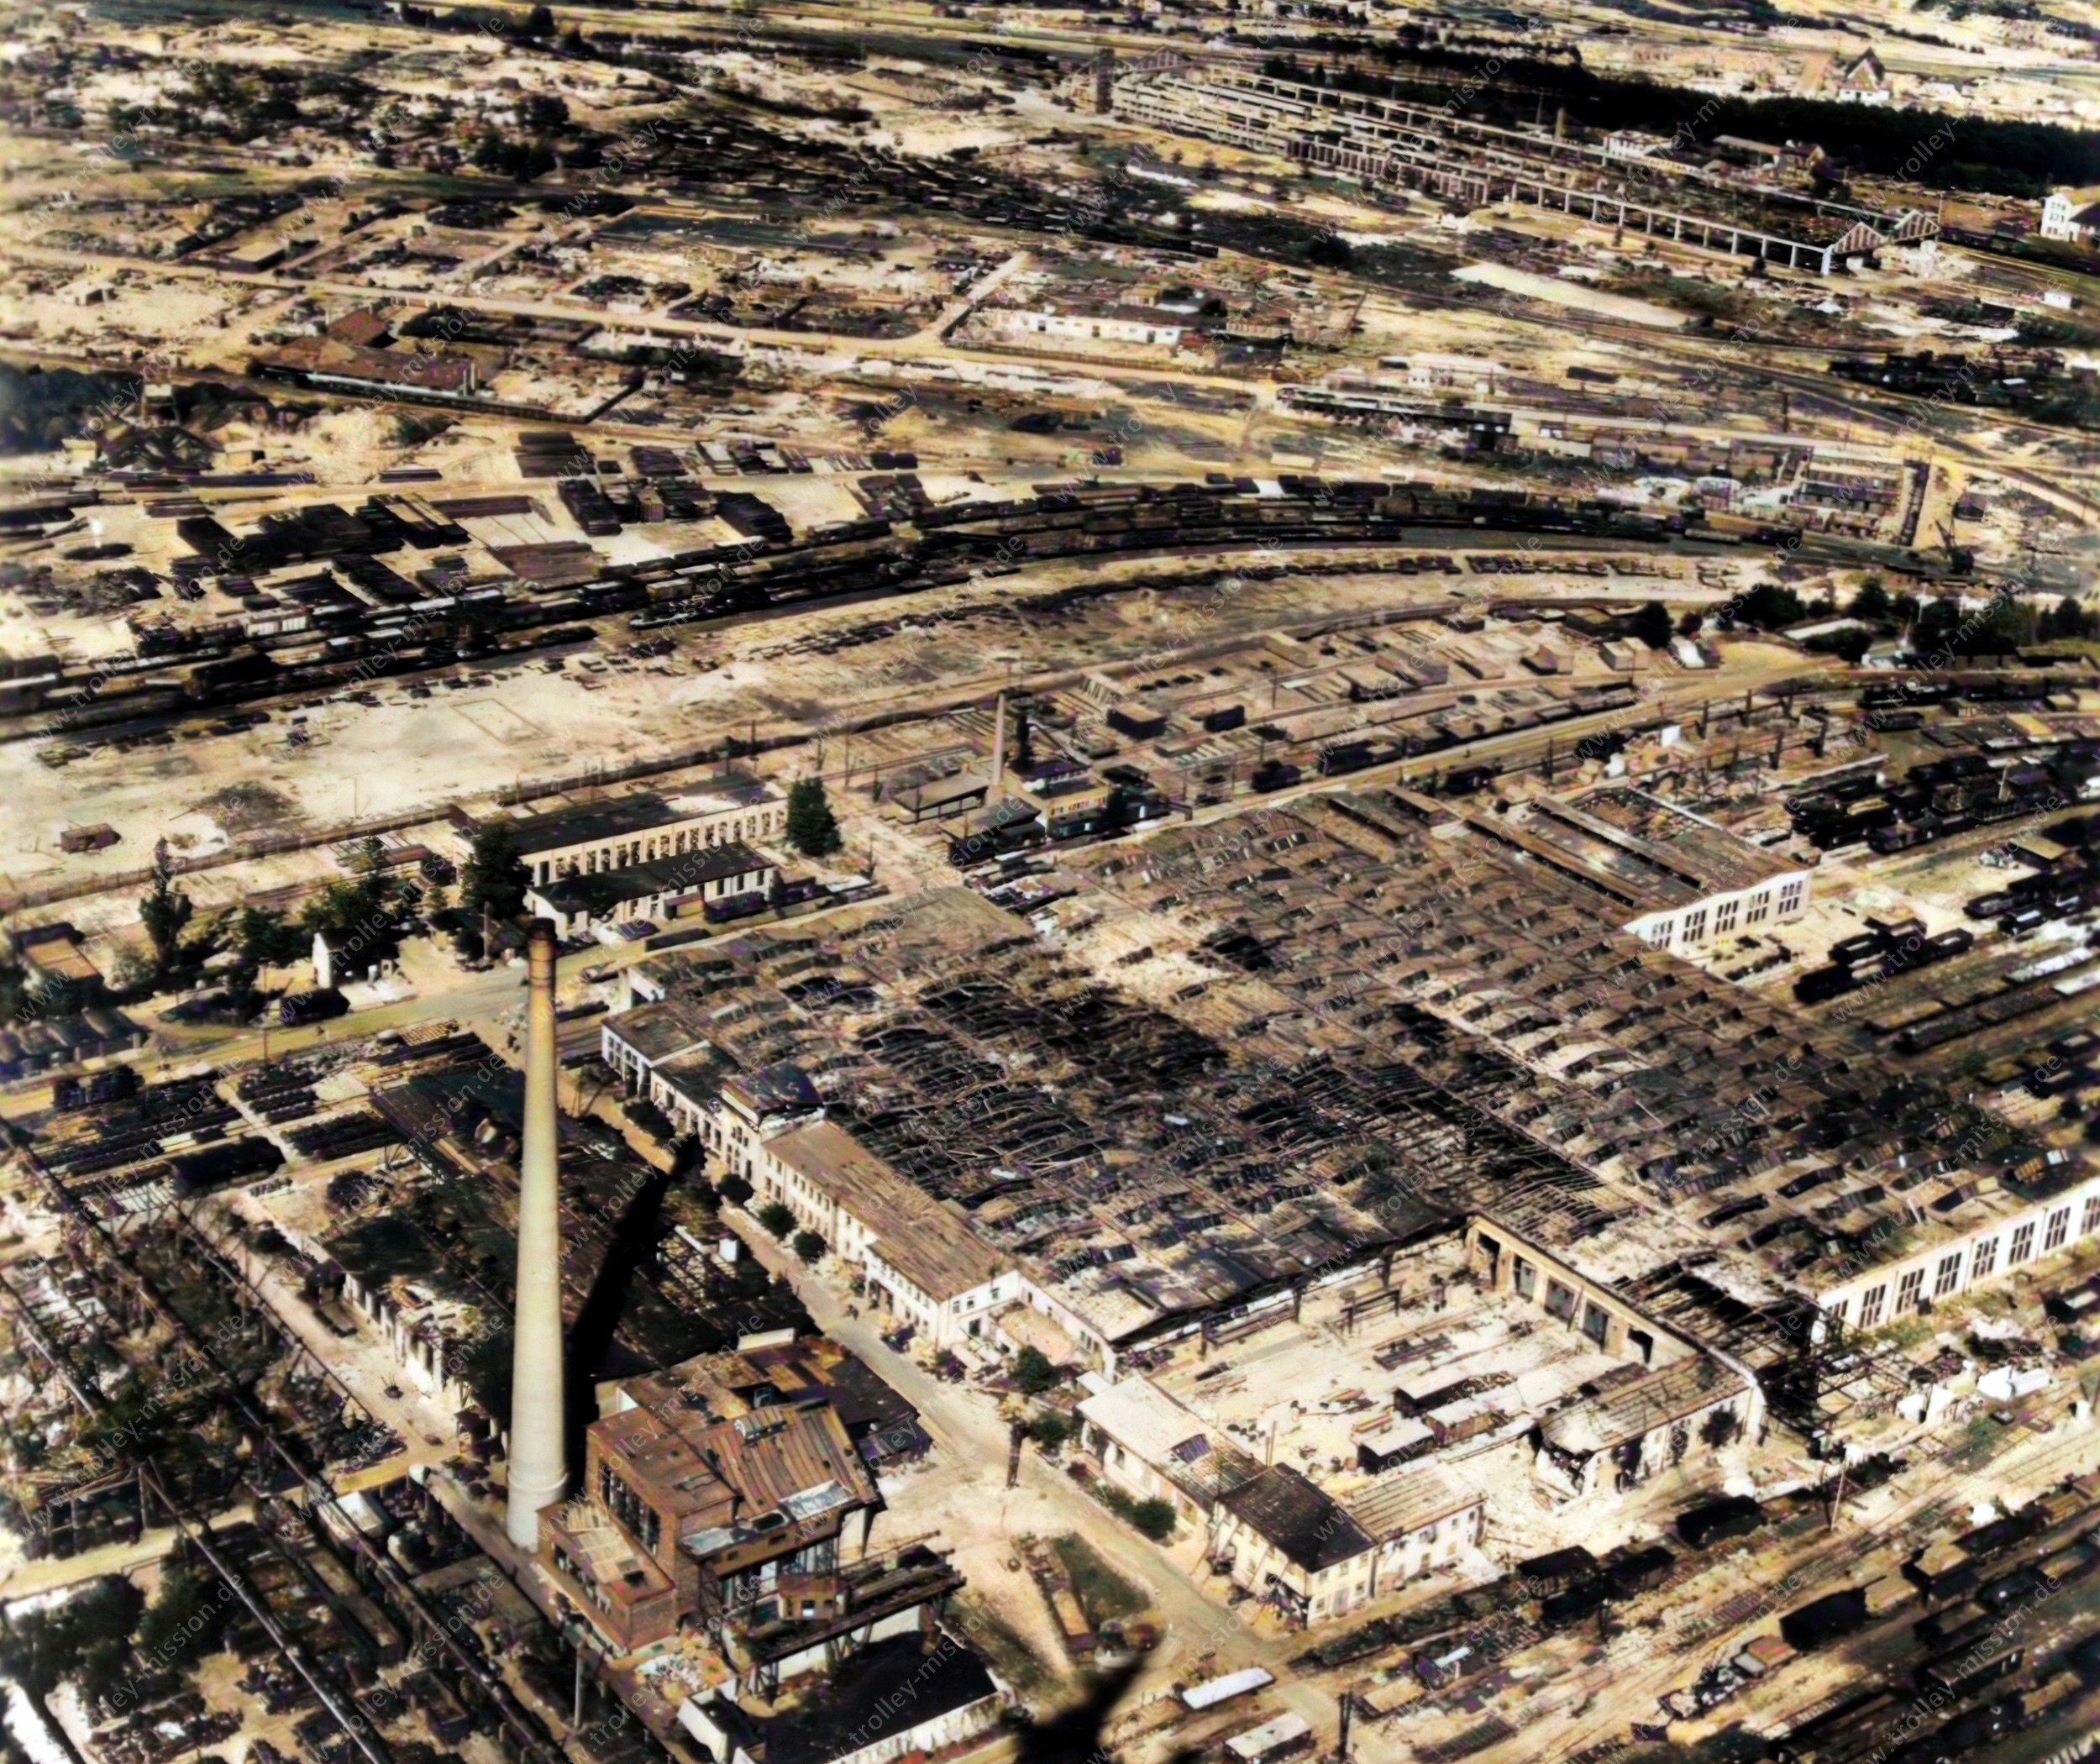 Die Luftaufnahme zeigt einen Teil des großen Rangierbahnhofes in Nürnberg, der heute in dieser Form nicht mehr existiert